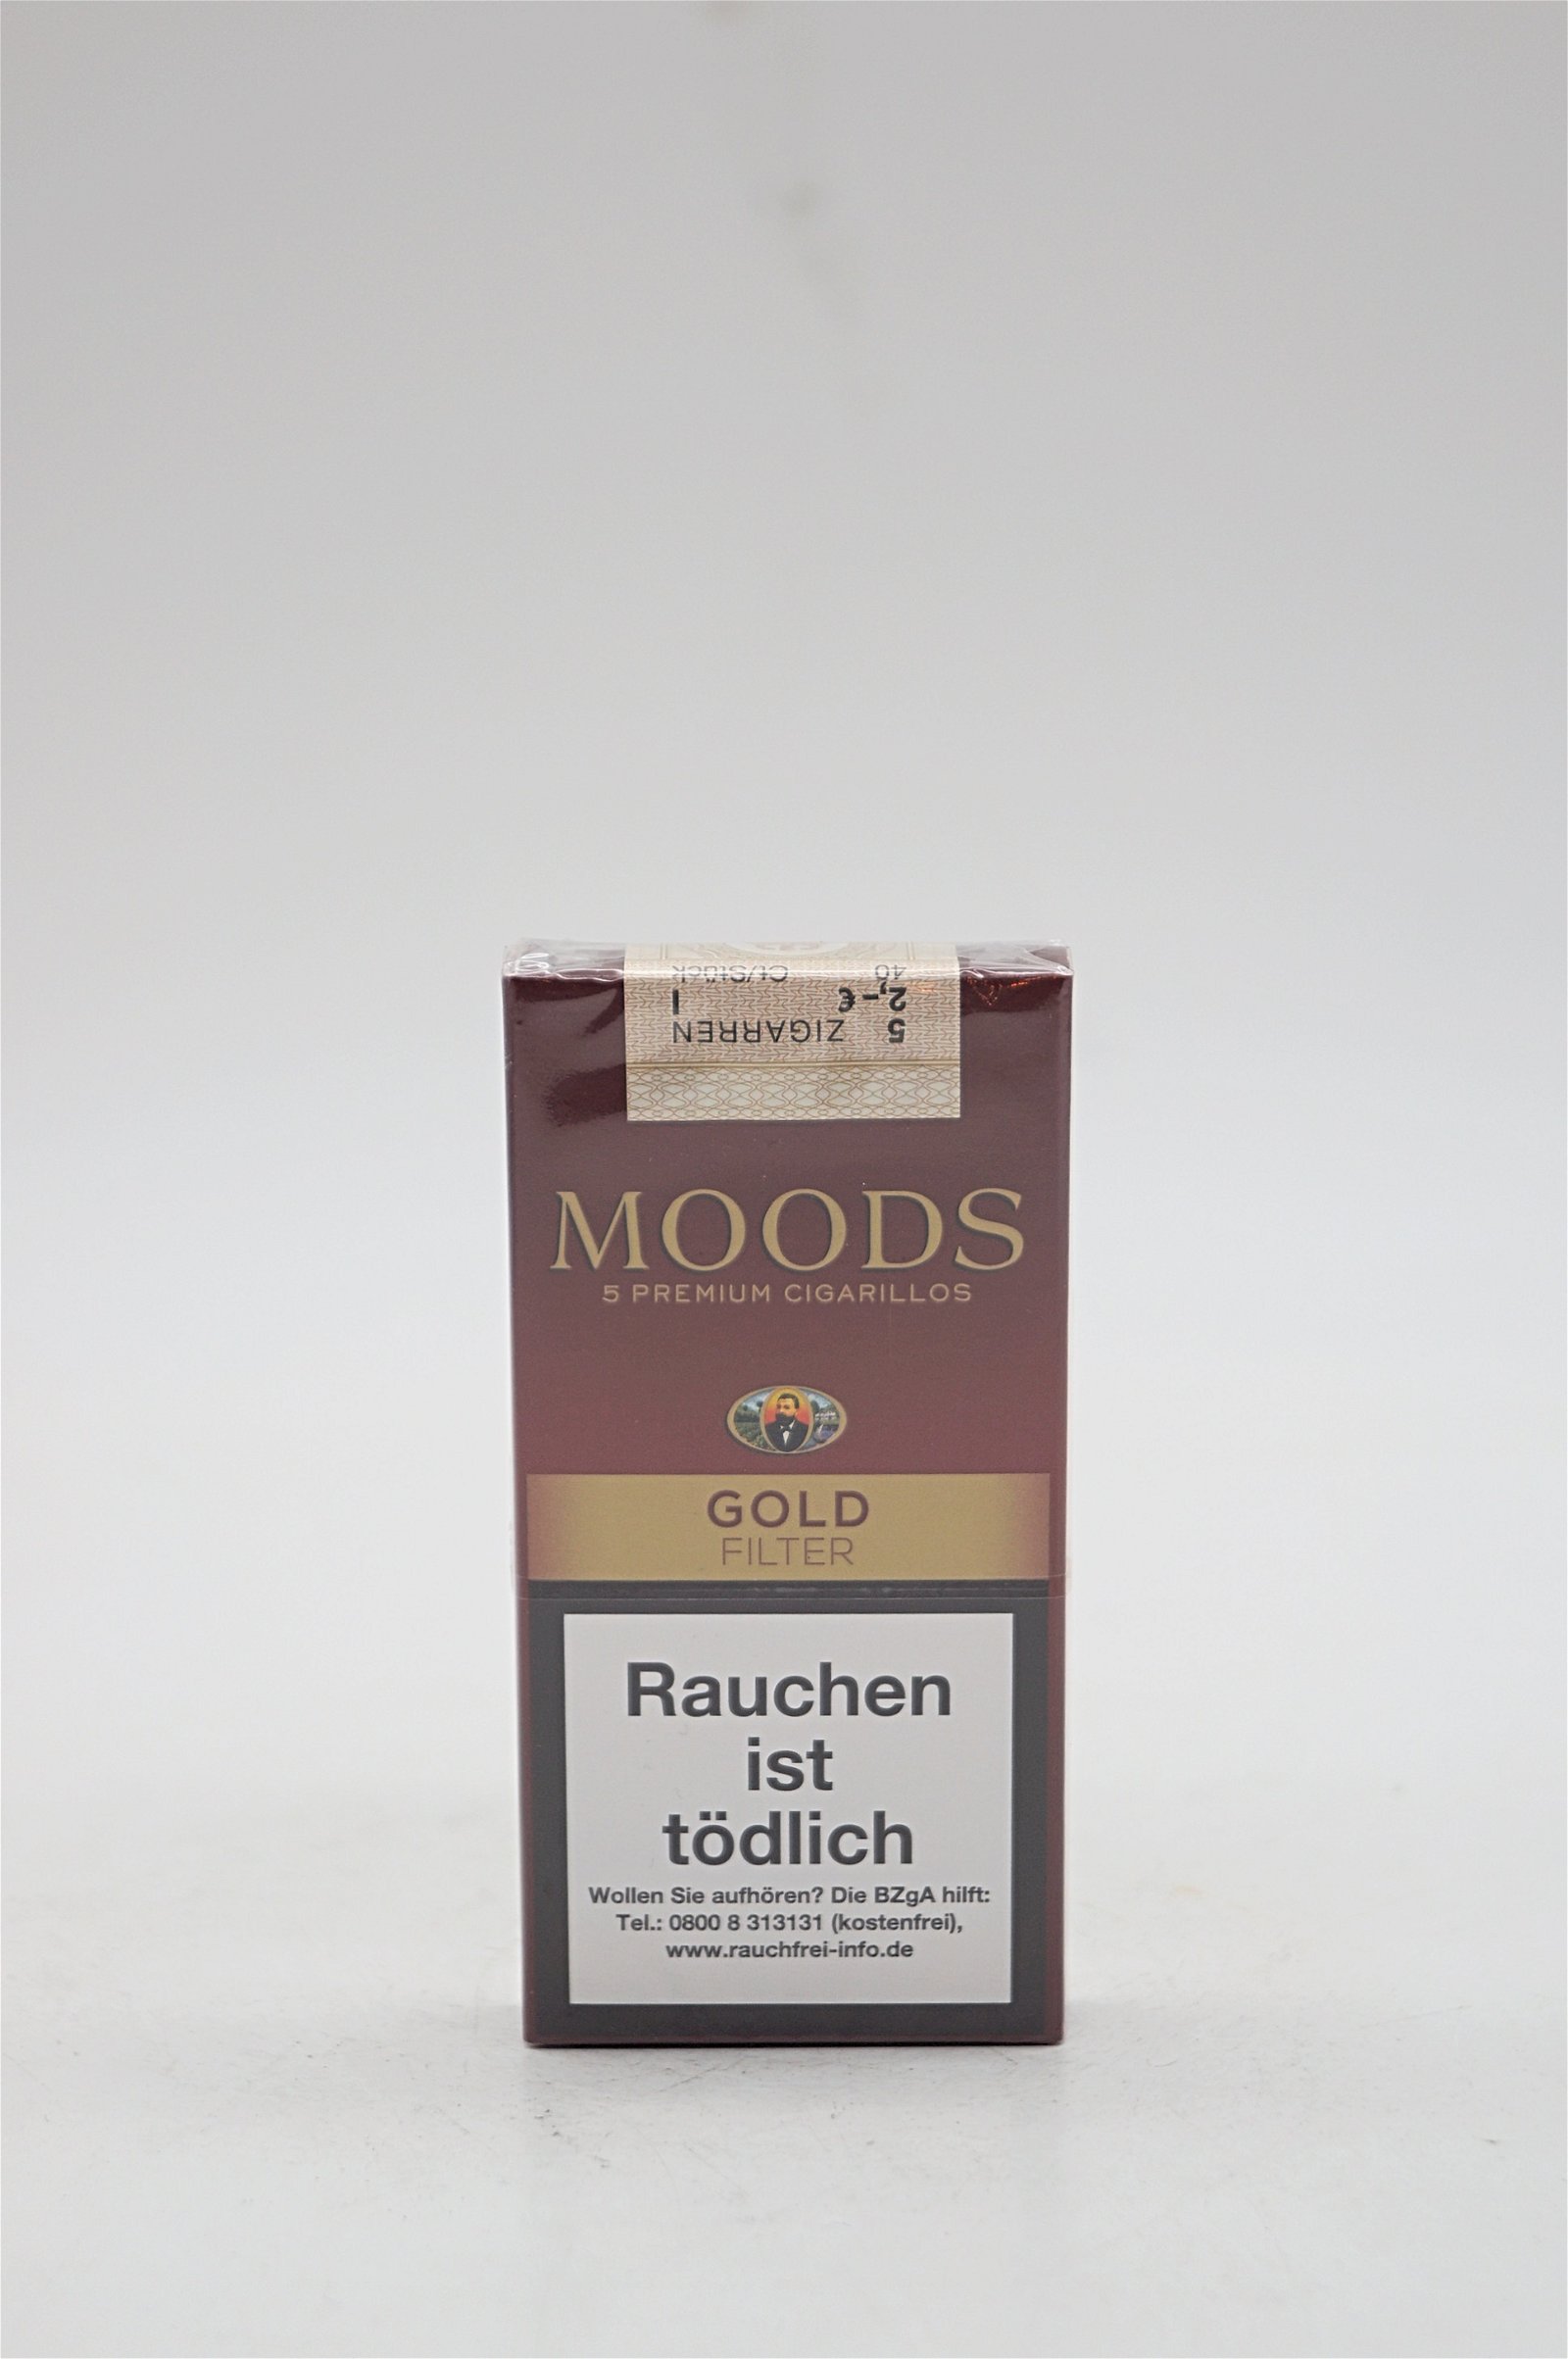 Moods Gold Filter 5 Premium Cigarillos